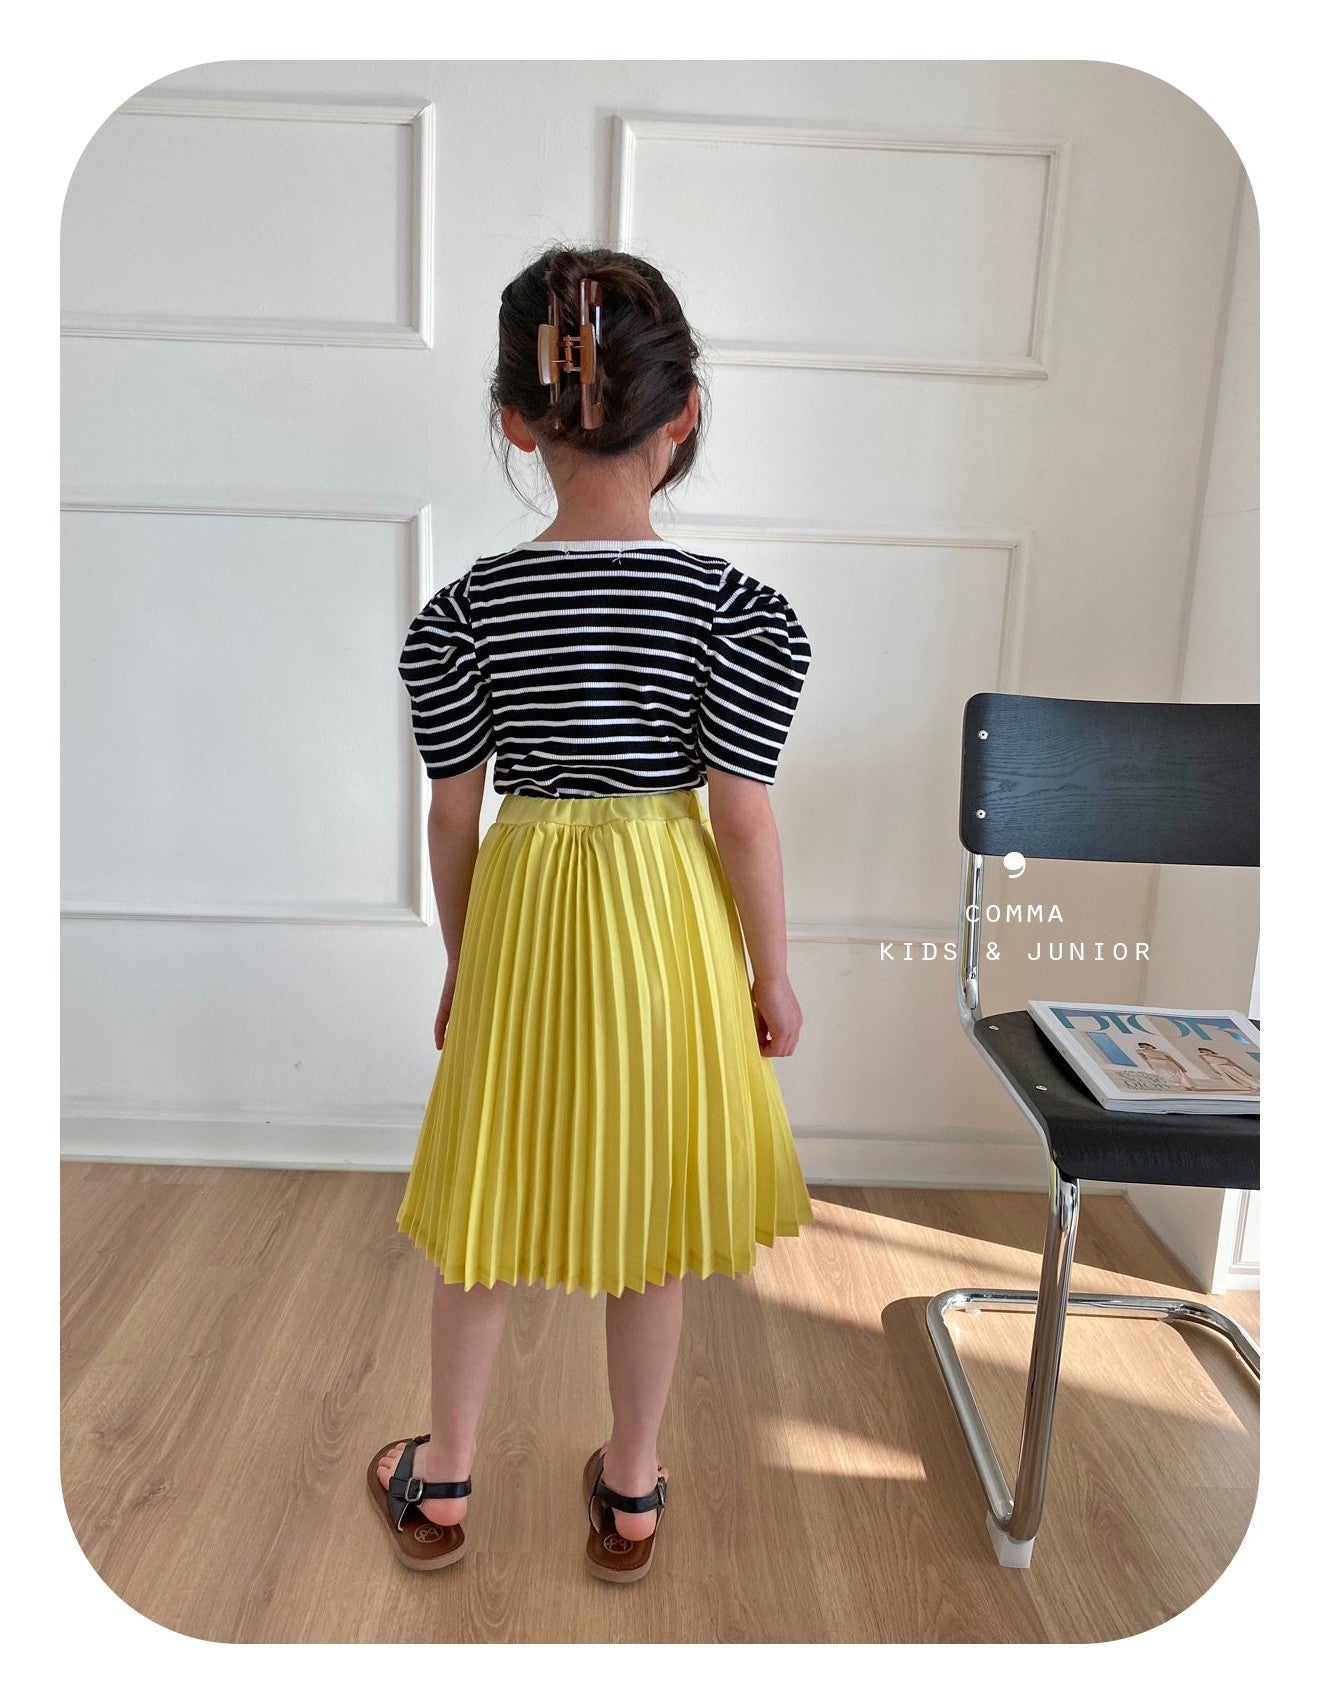 【注文後取り寄せ】韓国子供服 Comma 女の子 子供服  ヨリスカート 2色 80-150サイズ